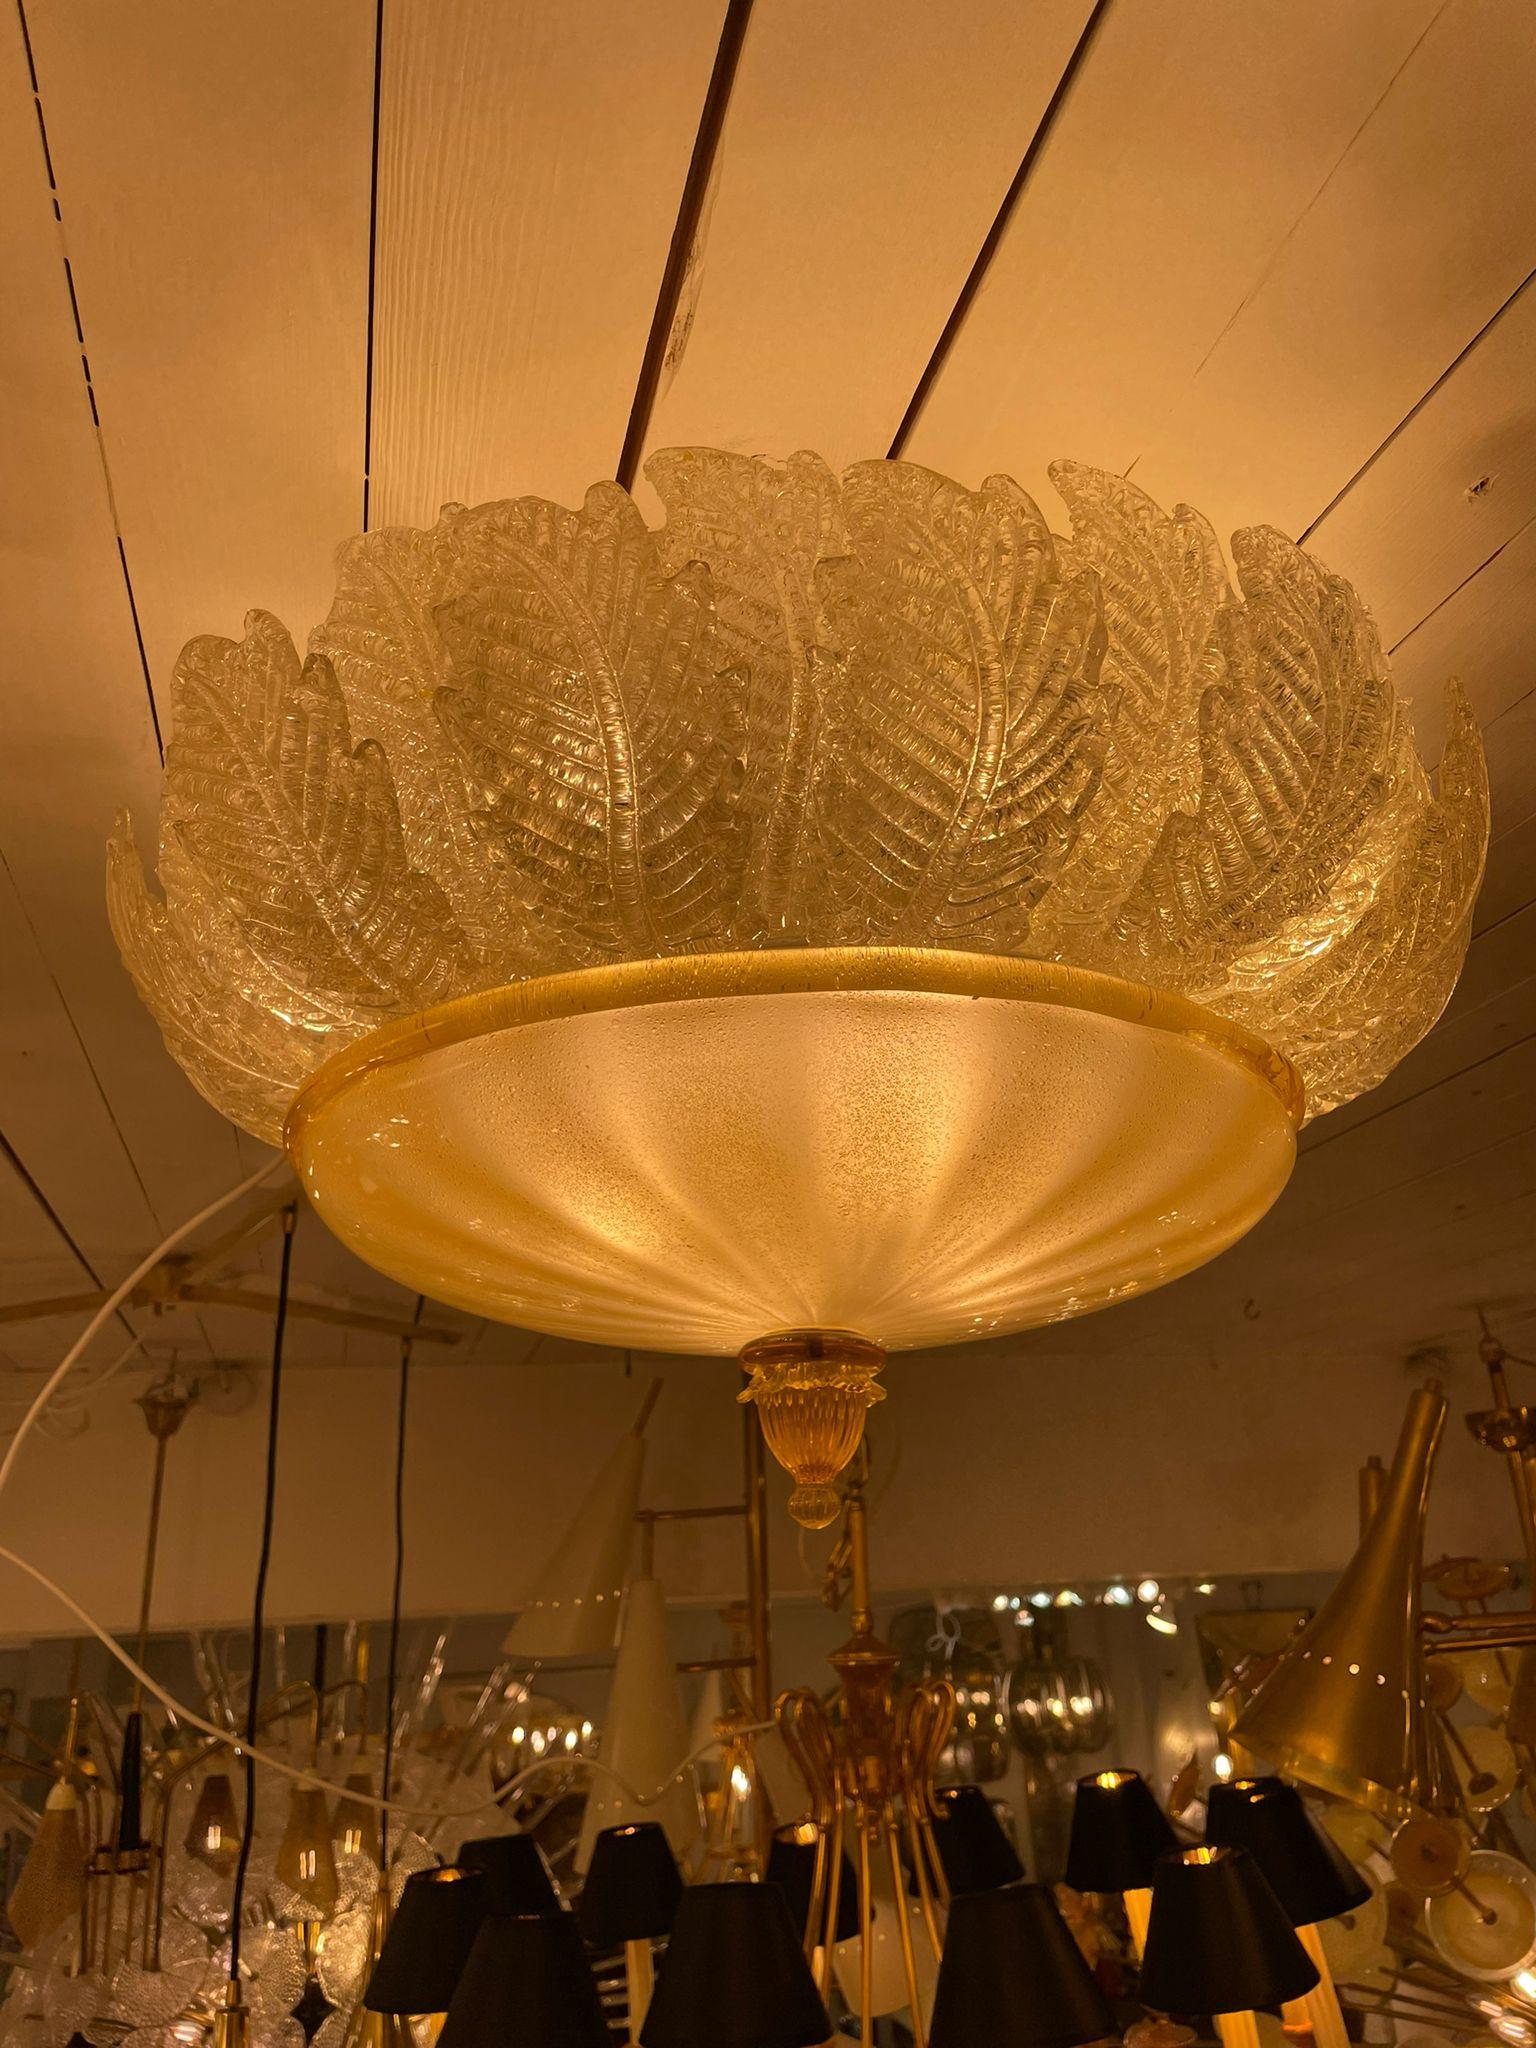 Fantastische und fabelhafte Barovier und Toso Murano Italien Kunstglas Deckenleuchte. Die seltene Lampe besteht aus 28 mundgeblasenen, blattförmigen, goldenen Pulverglasscheiben und einem riesigen Glas als Boden. Diese Schönheit hat das Aussehen